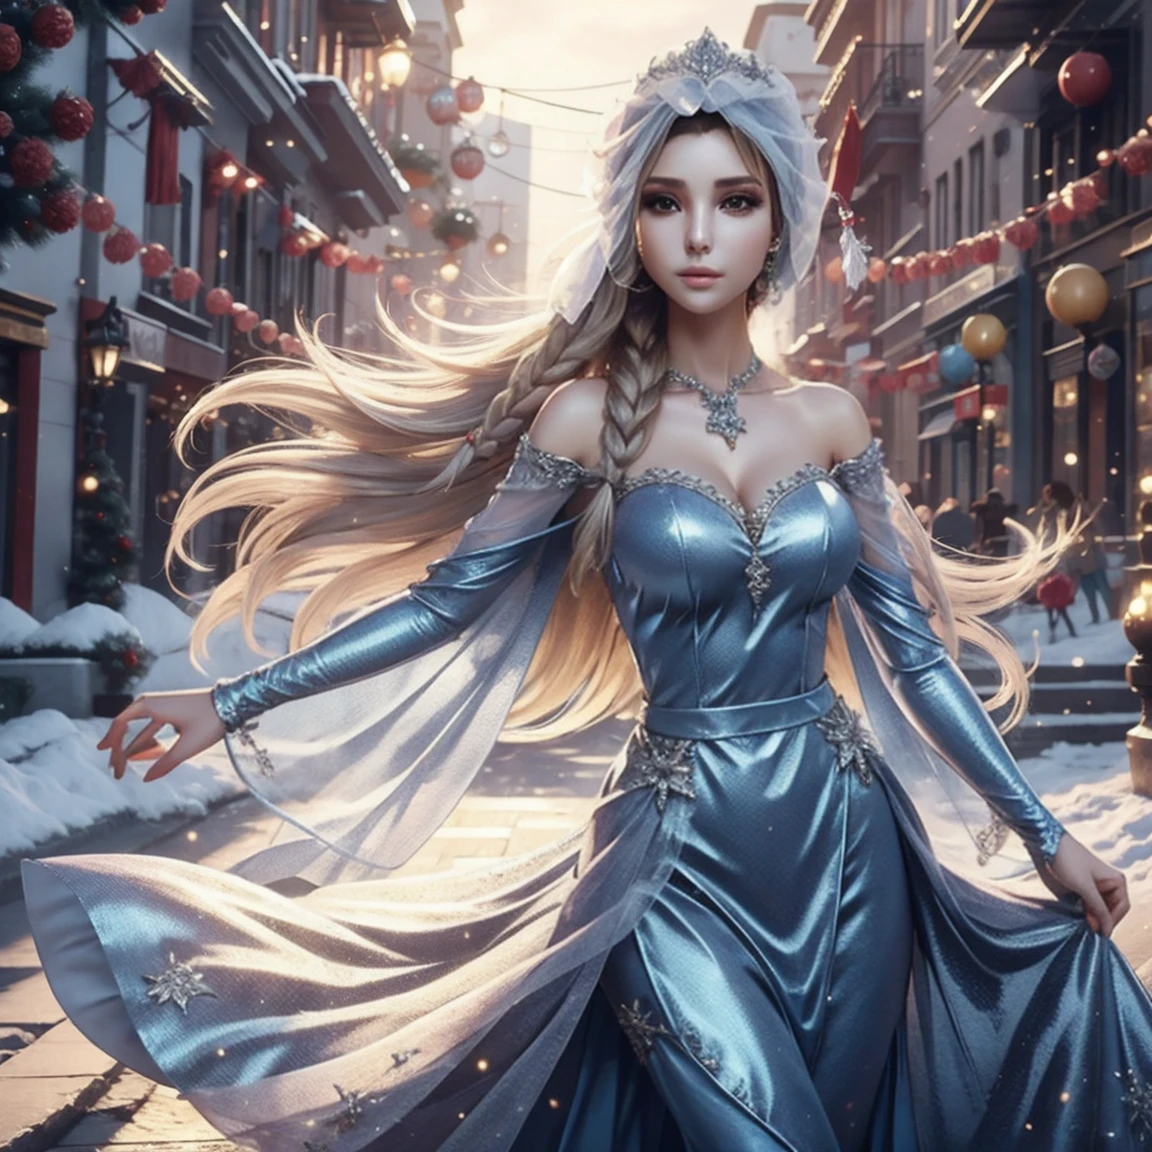 Erstellen Sie ein realistisches Bild von Elsa aus Frozen, echter Charakter Frozen Elsa, modern gekleidet für eine Silvesterparty . HDR 8K Texturkleid, visuelles Rendern Elsa, Elsa sollte ein rotes tragen, zartes langes Kleid , zusammen mit einer Weihnachtsmütze. Das Kleid sollte stilvoll und für eine Prinzessin geeignet sein. Silvesterkleid mit echten Federn und Quasten.